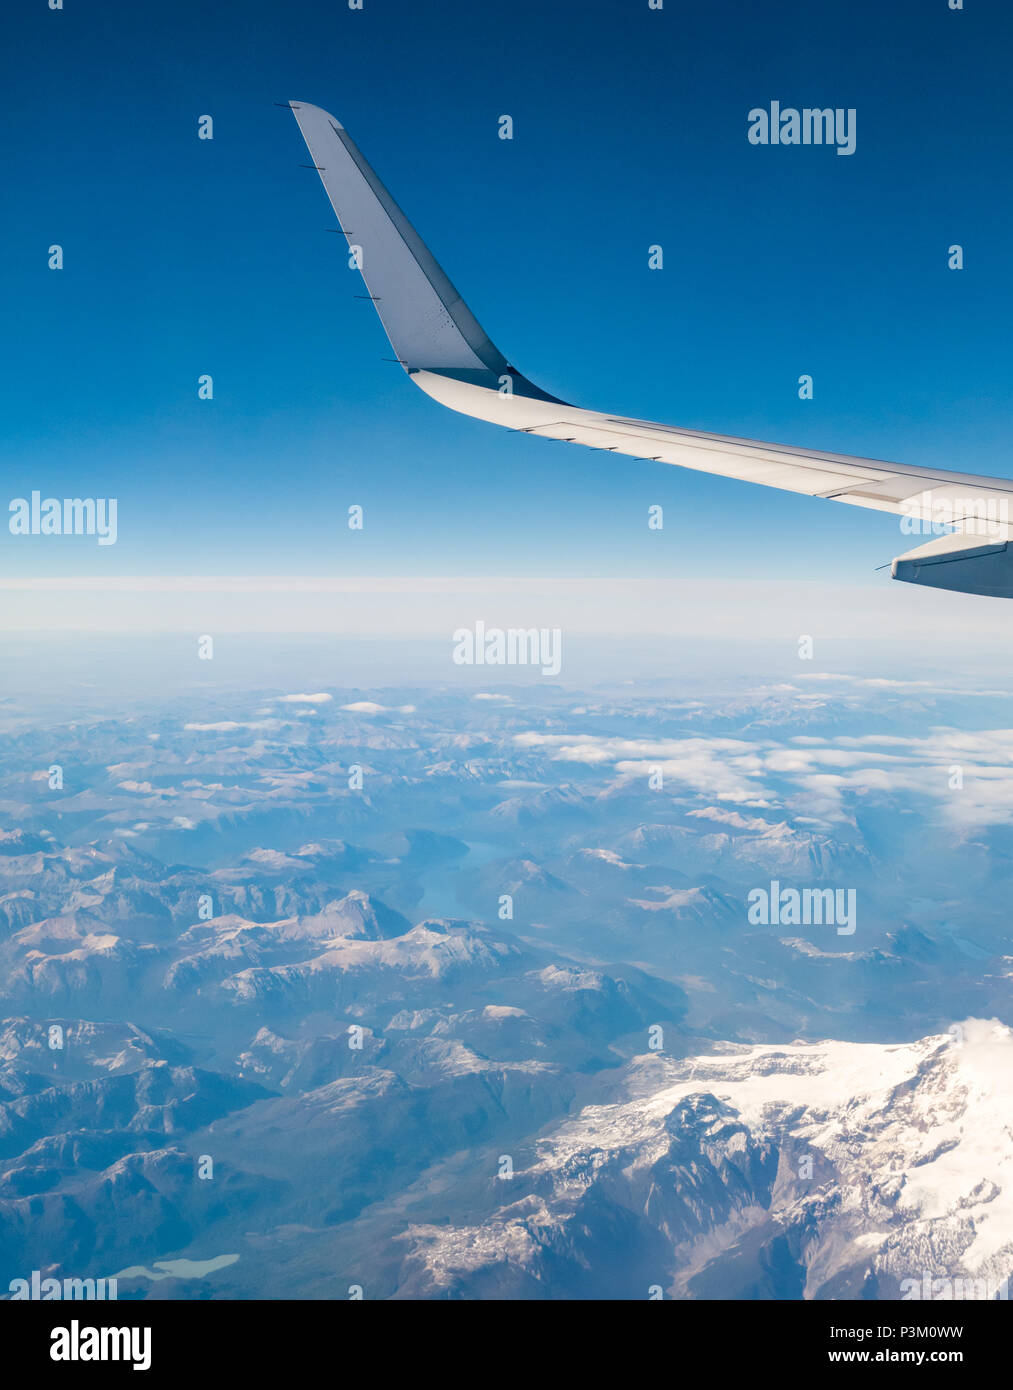 Vue depuis la fenêtre de l'avion de la neige a couvert des Andes avec aile d'avion, glace de Patagonie australe domaine Patagonie, au Chili, en Amérique du Sud Banque D'Images